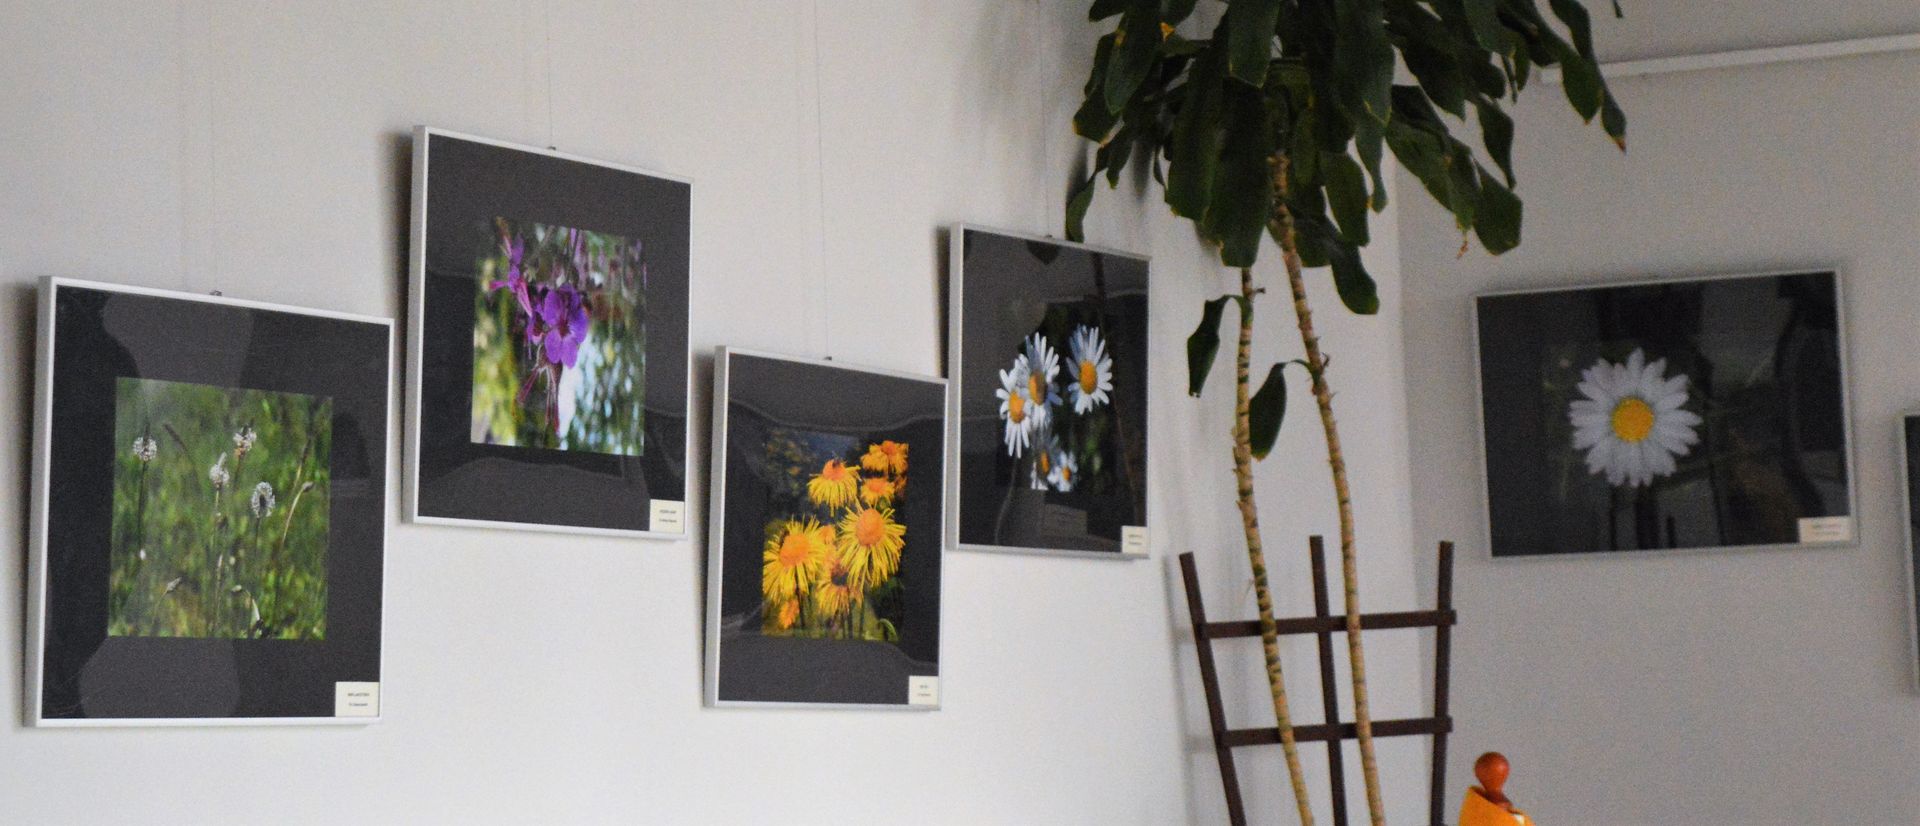 Galeria Suplement z wystawą fotograficzną Polne kwiaty